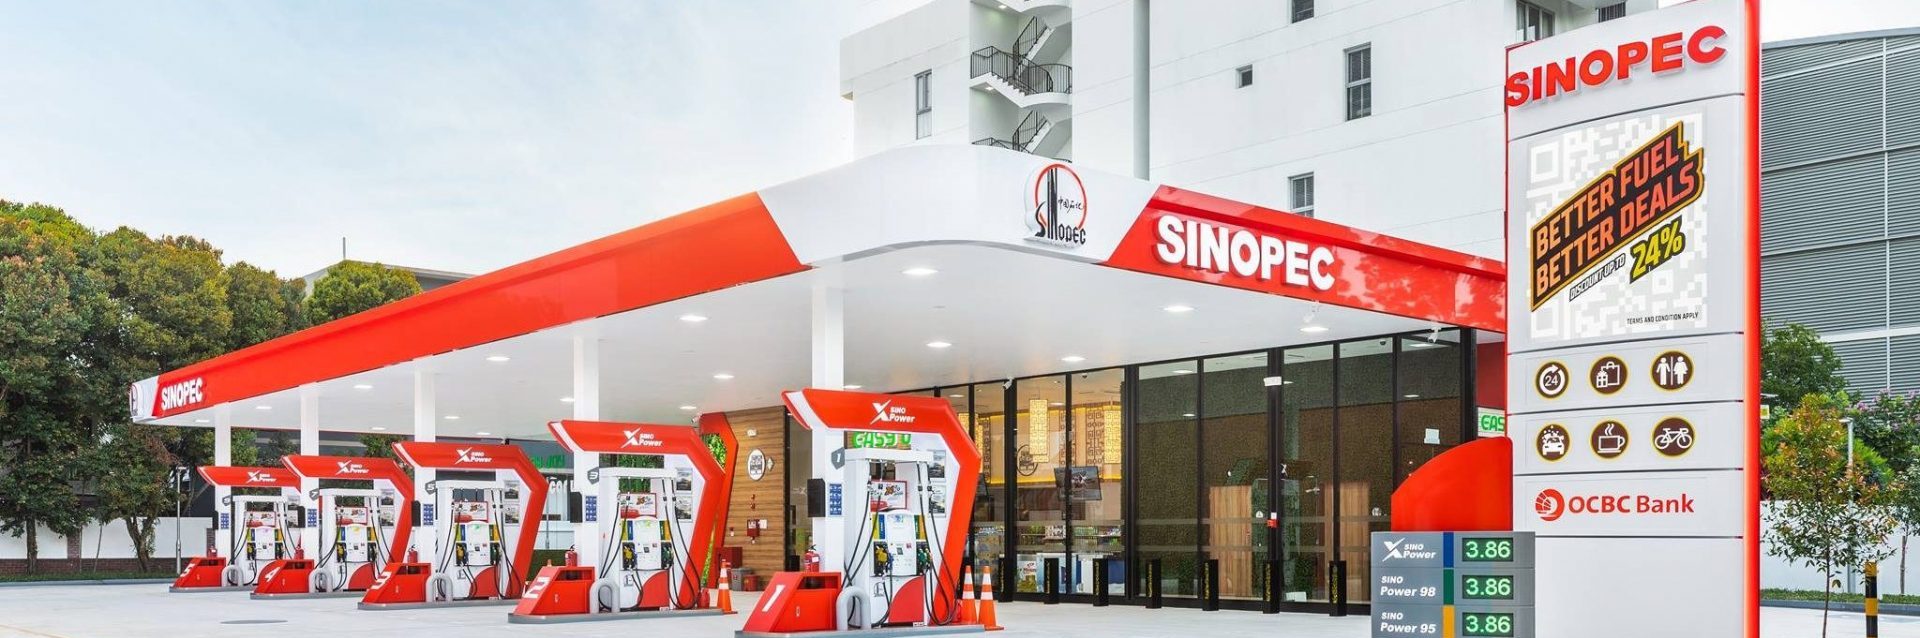 Sinopec Singapore Petro